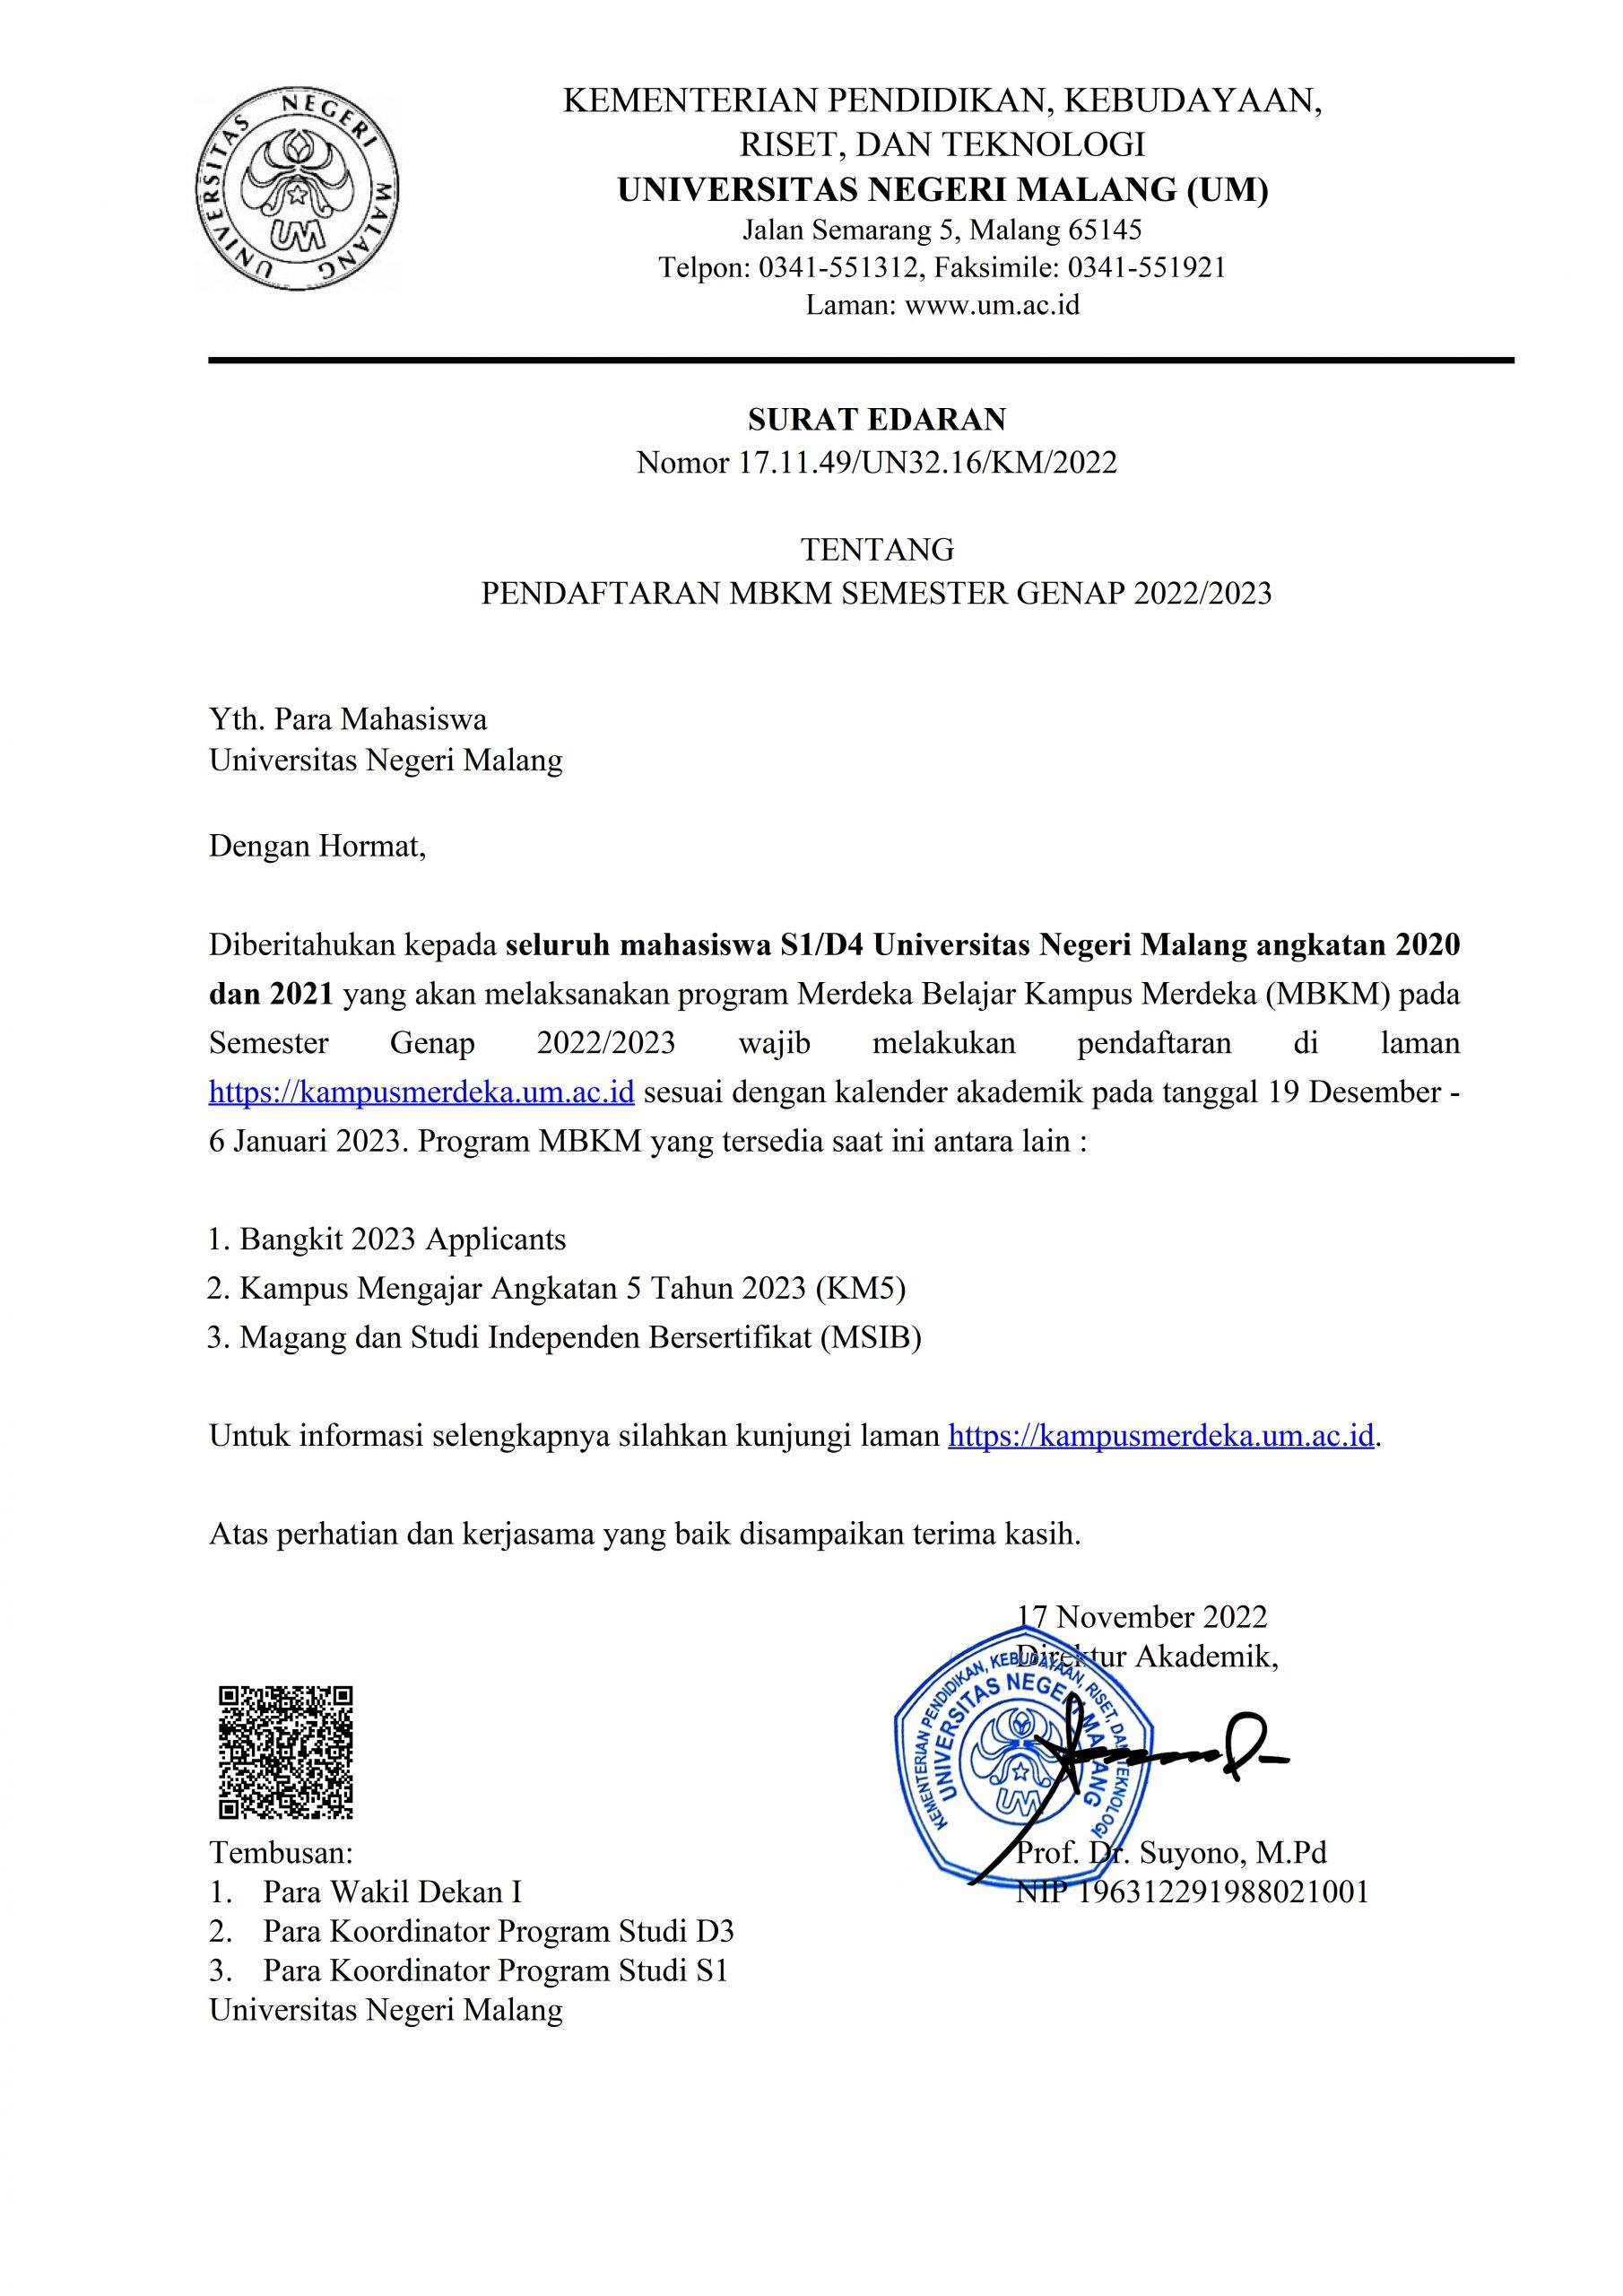 Surat Edaran Pendaftaran MBKM Semester Genap 2022/2023